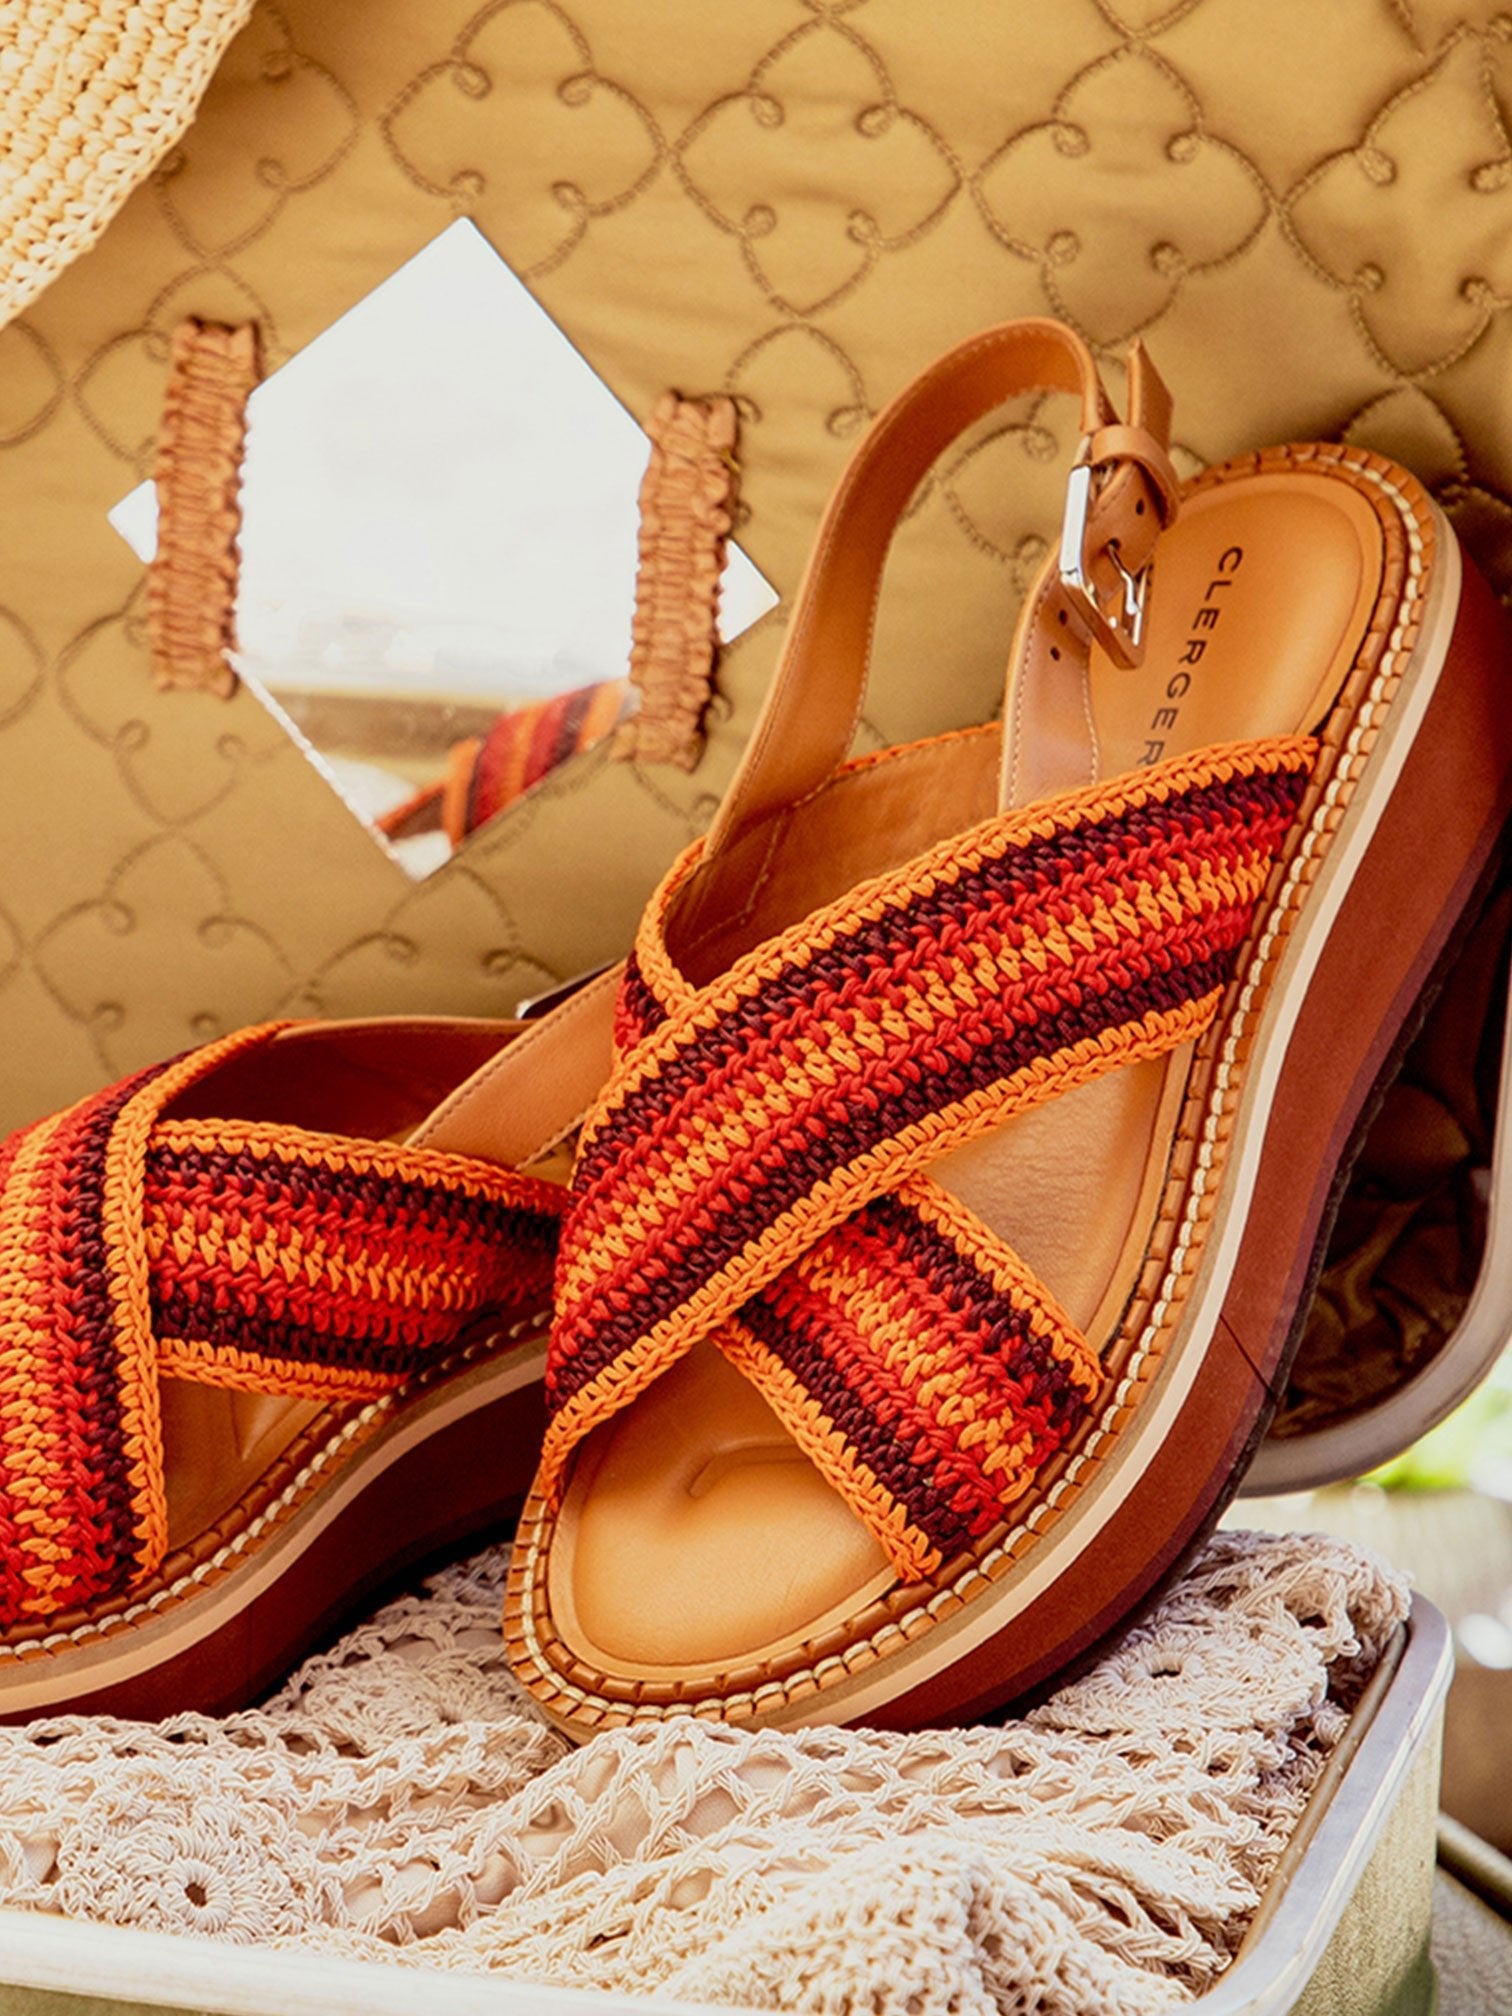 SANDALS - FADEN sandals, jaspe crochet - FADENJASCROM340 - Clergerie Paris - USA